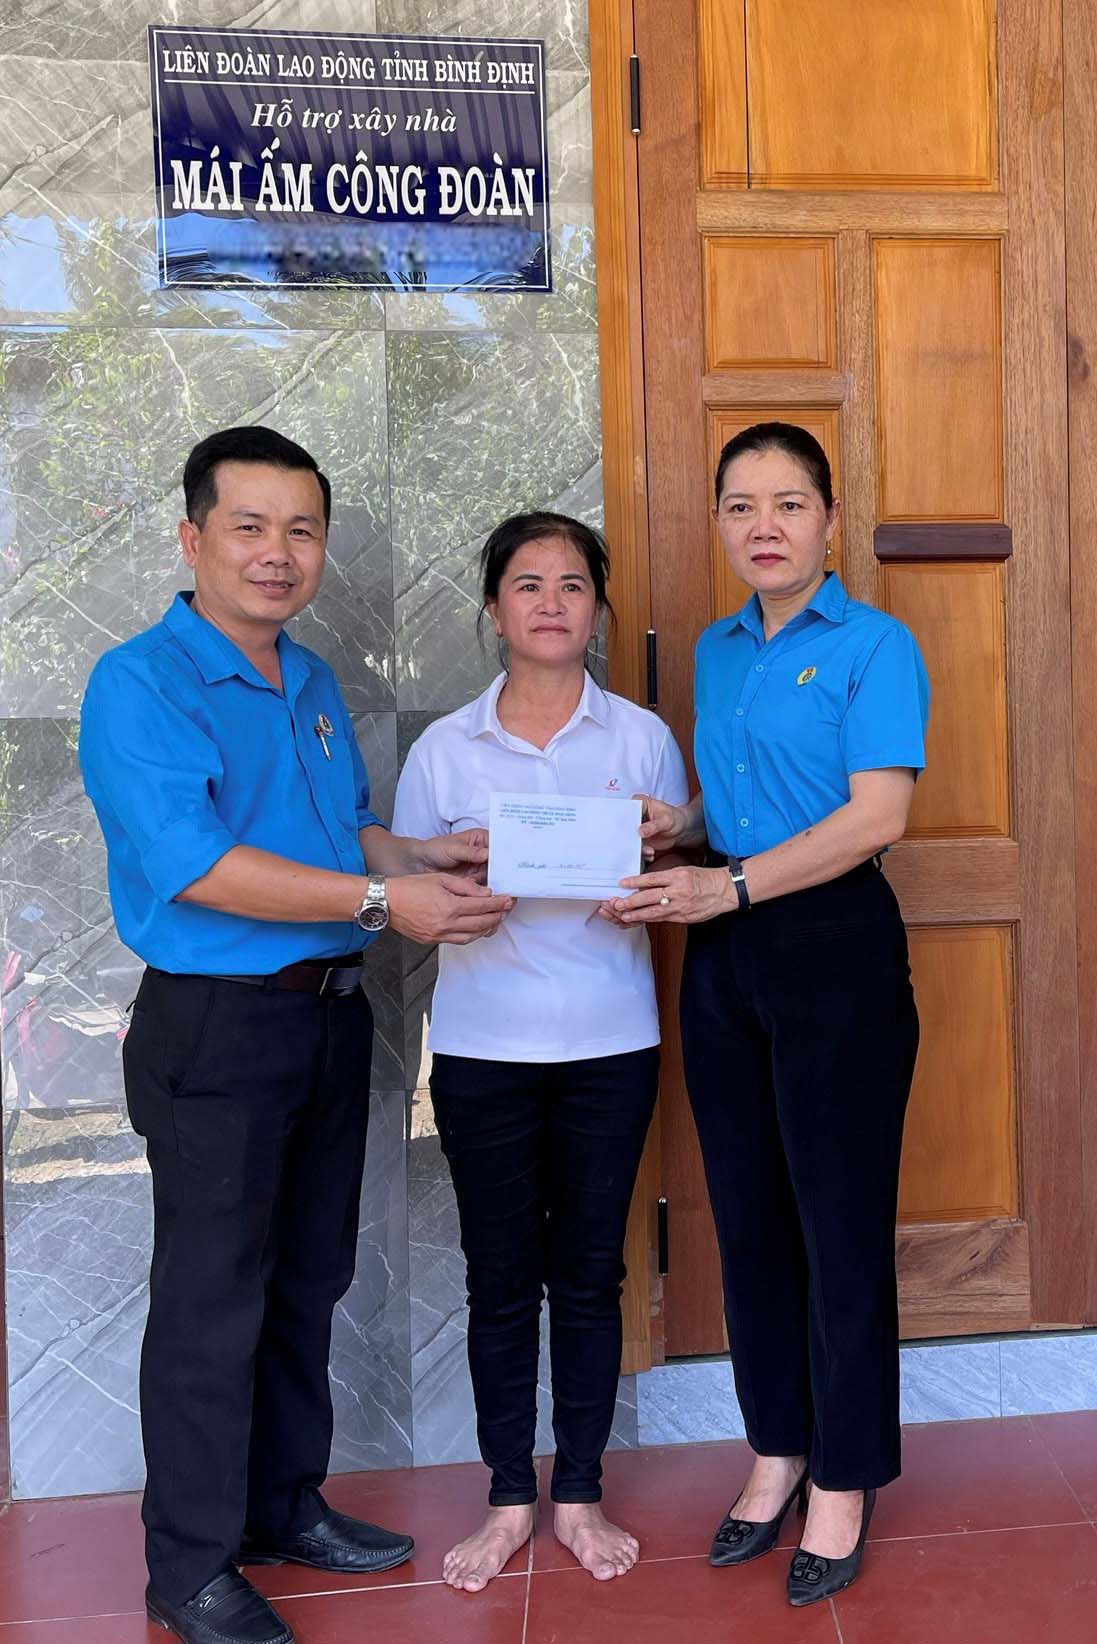 Trao hỗ trợ nhà Mái ấm công đoàn cho đoàn viên Nguyễn Thị Lạc. Ảnh: LĐLĐ Hoài Nhơn.